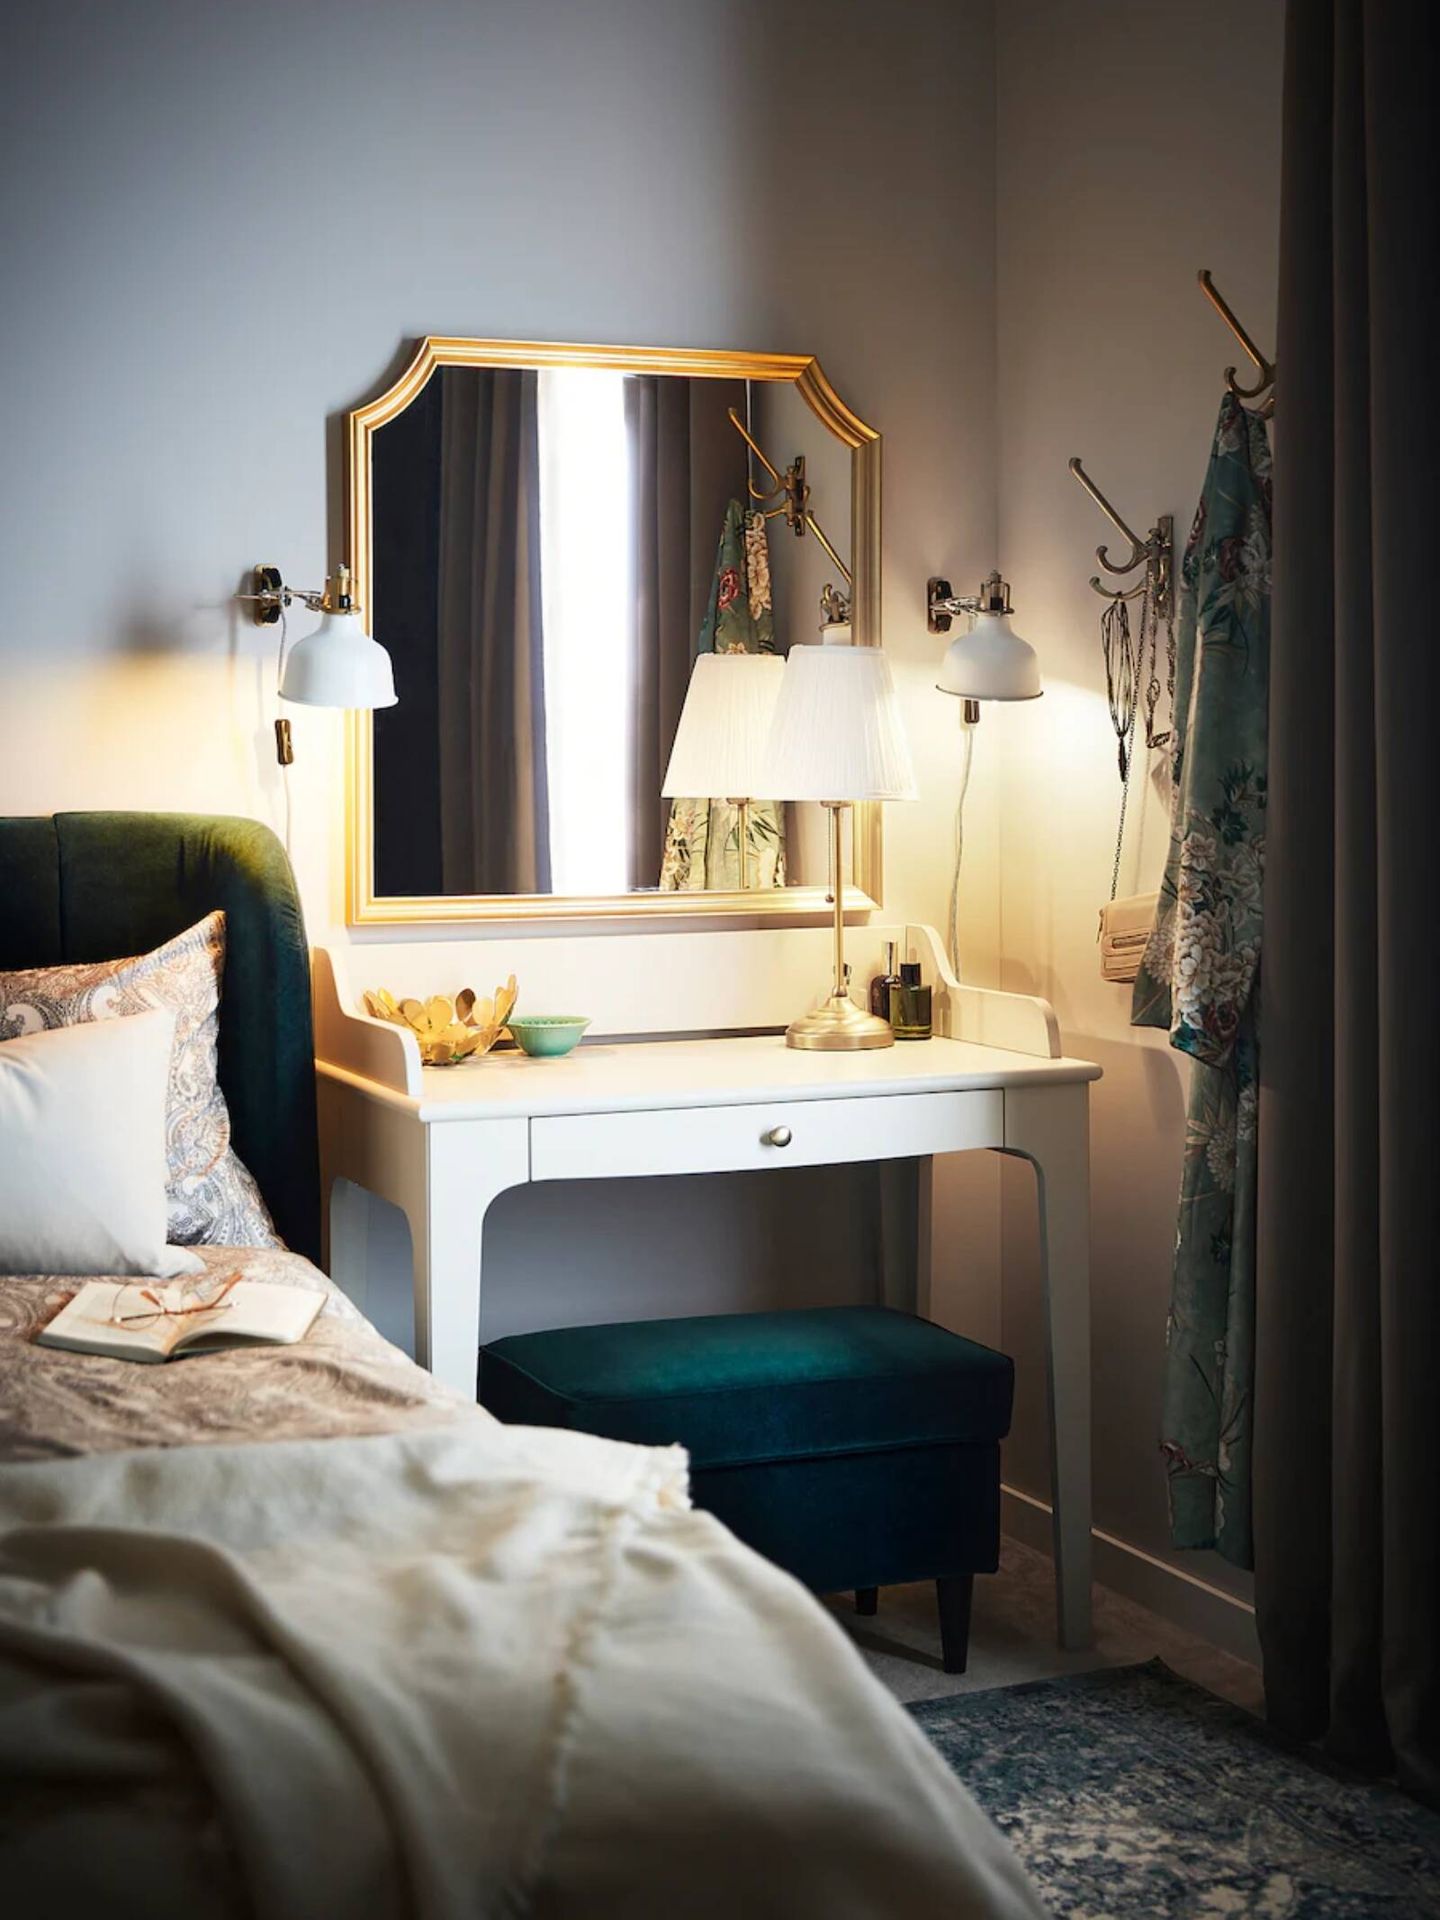 Los nuevos espejos de Ikea para tu salón o dormitorio. (Cortesía)